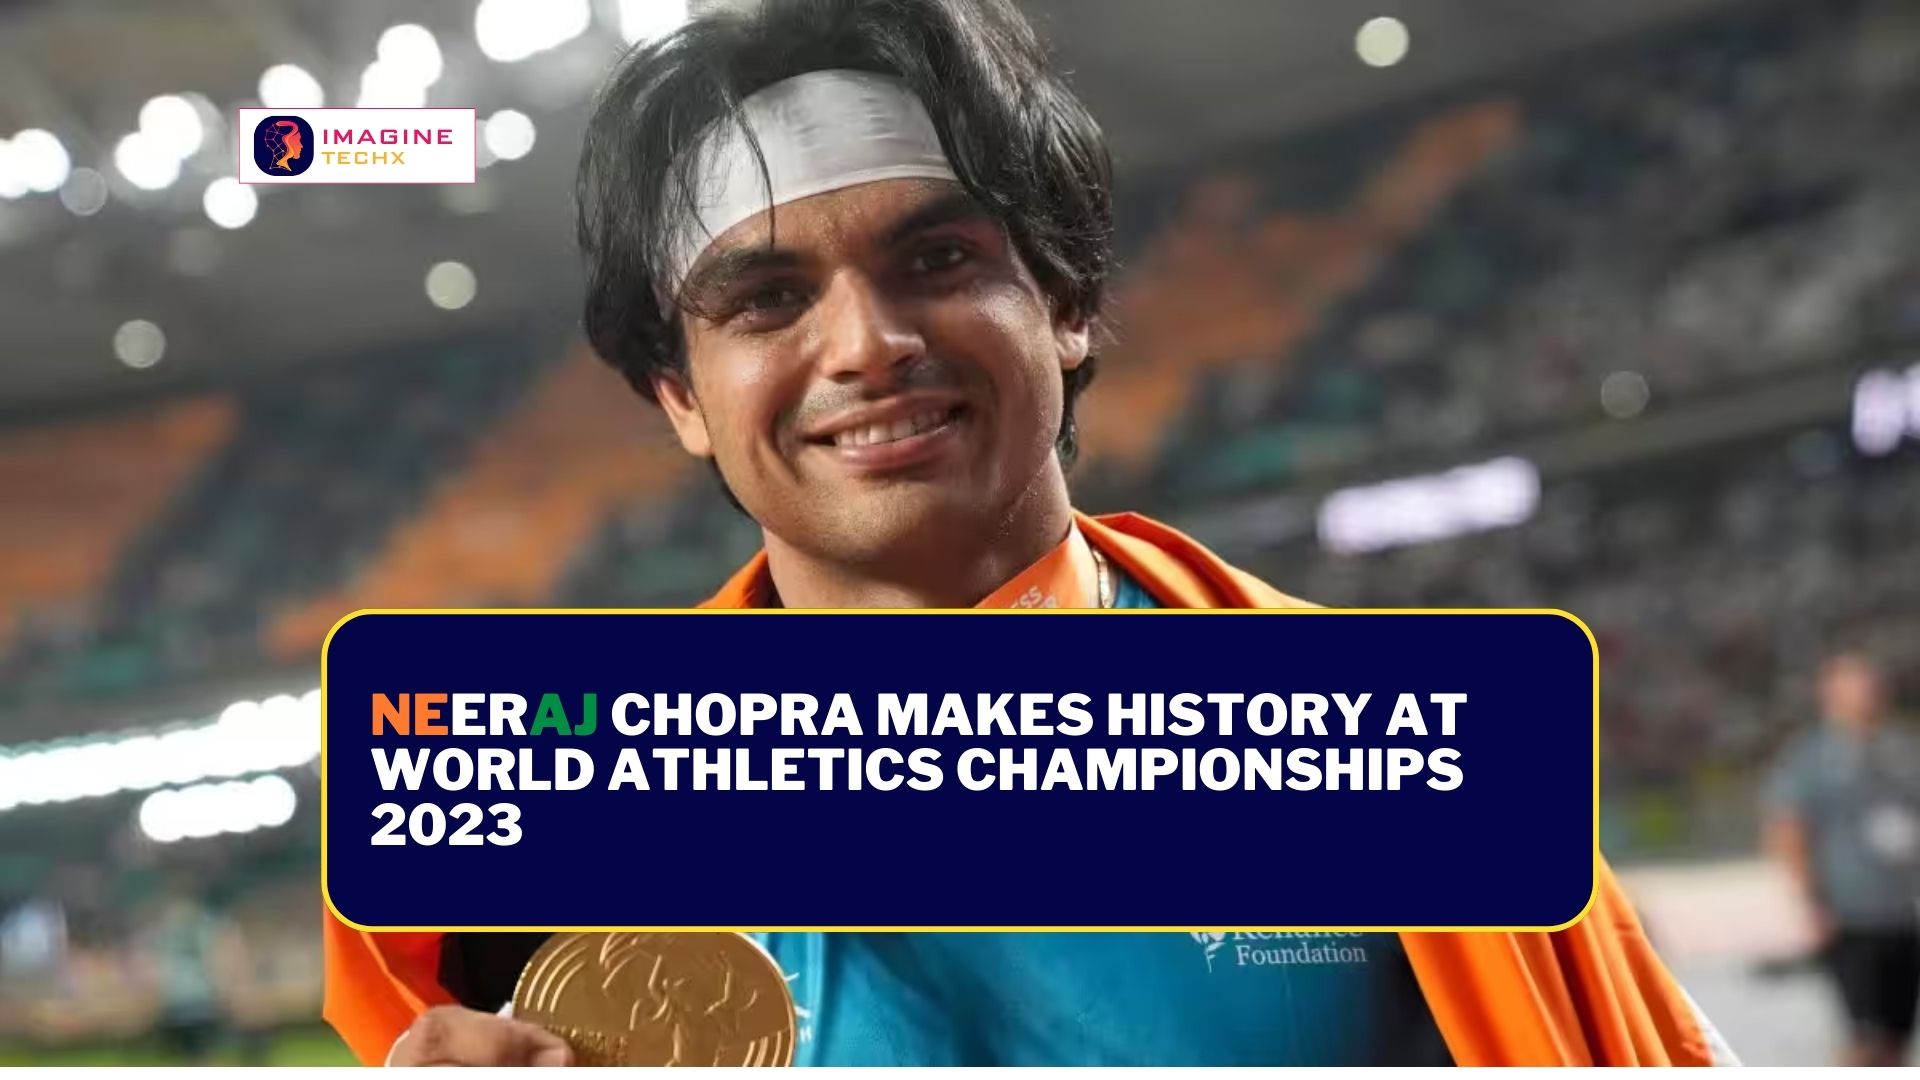 Neeraj Chopra Makes History at World Athletics Championships 2023